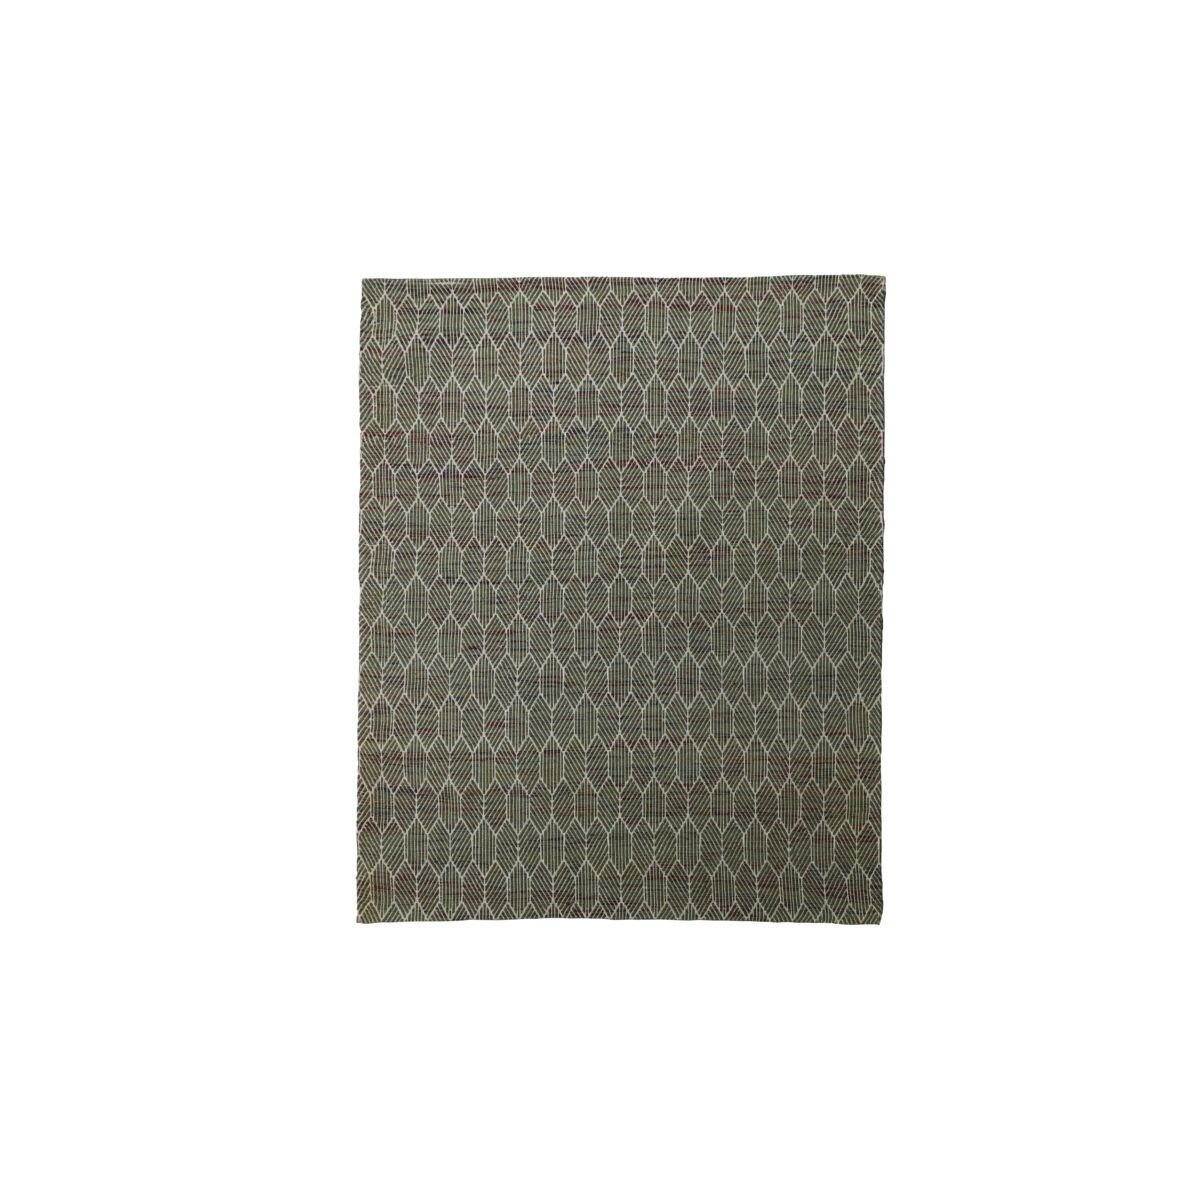 Agon - Teppich aus Baumwolle 180x180 cm